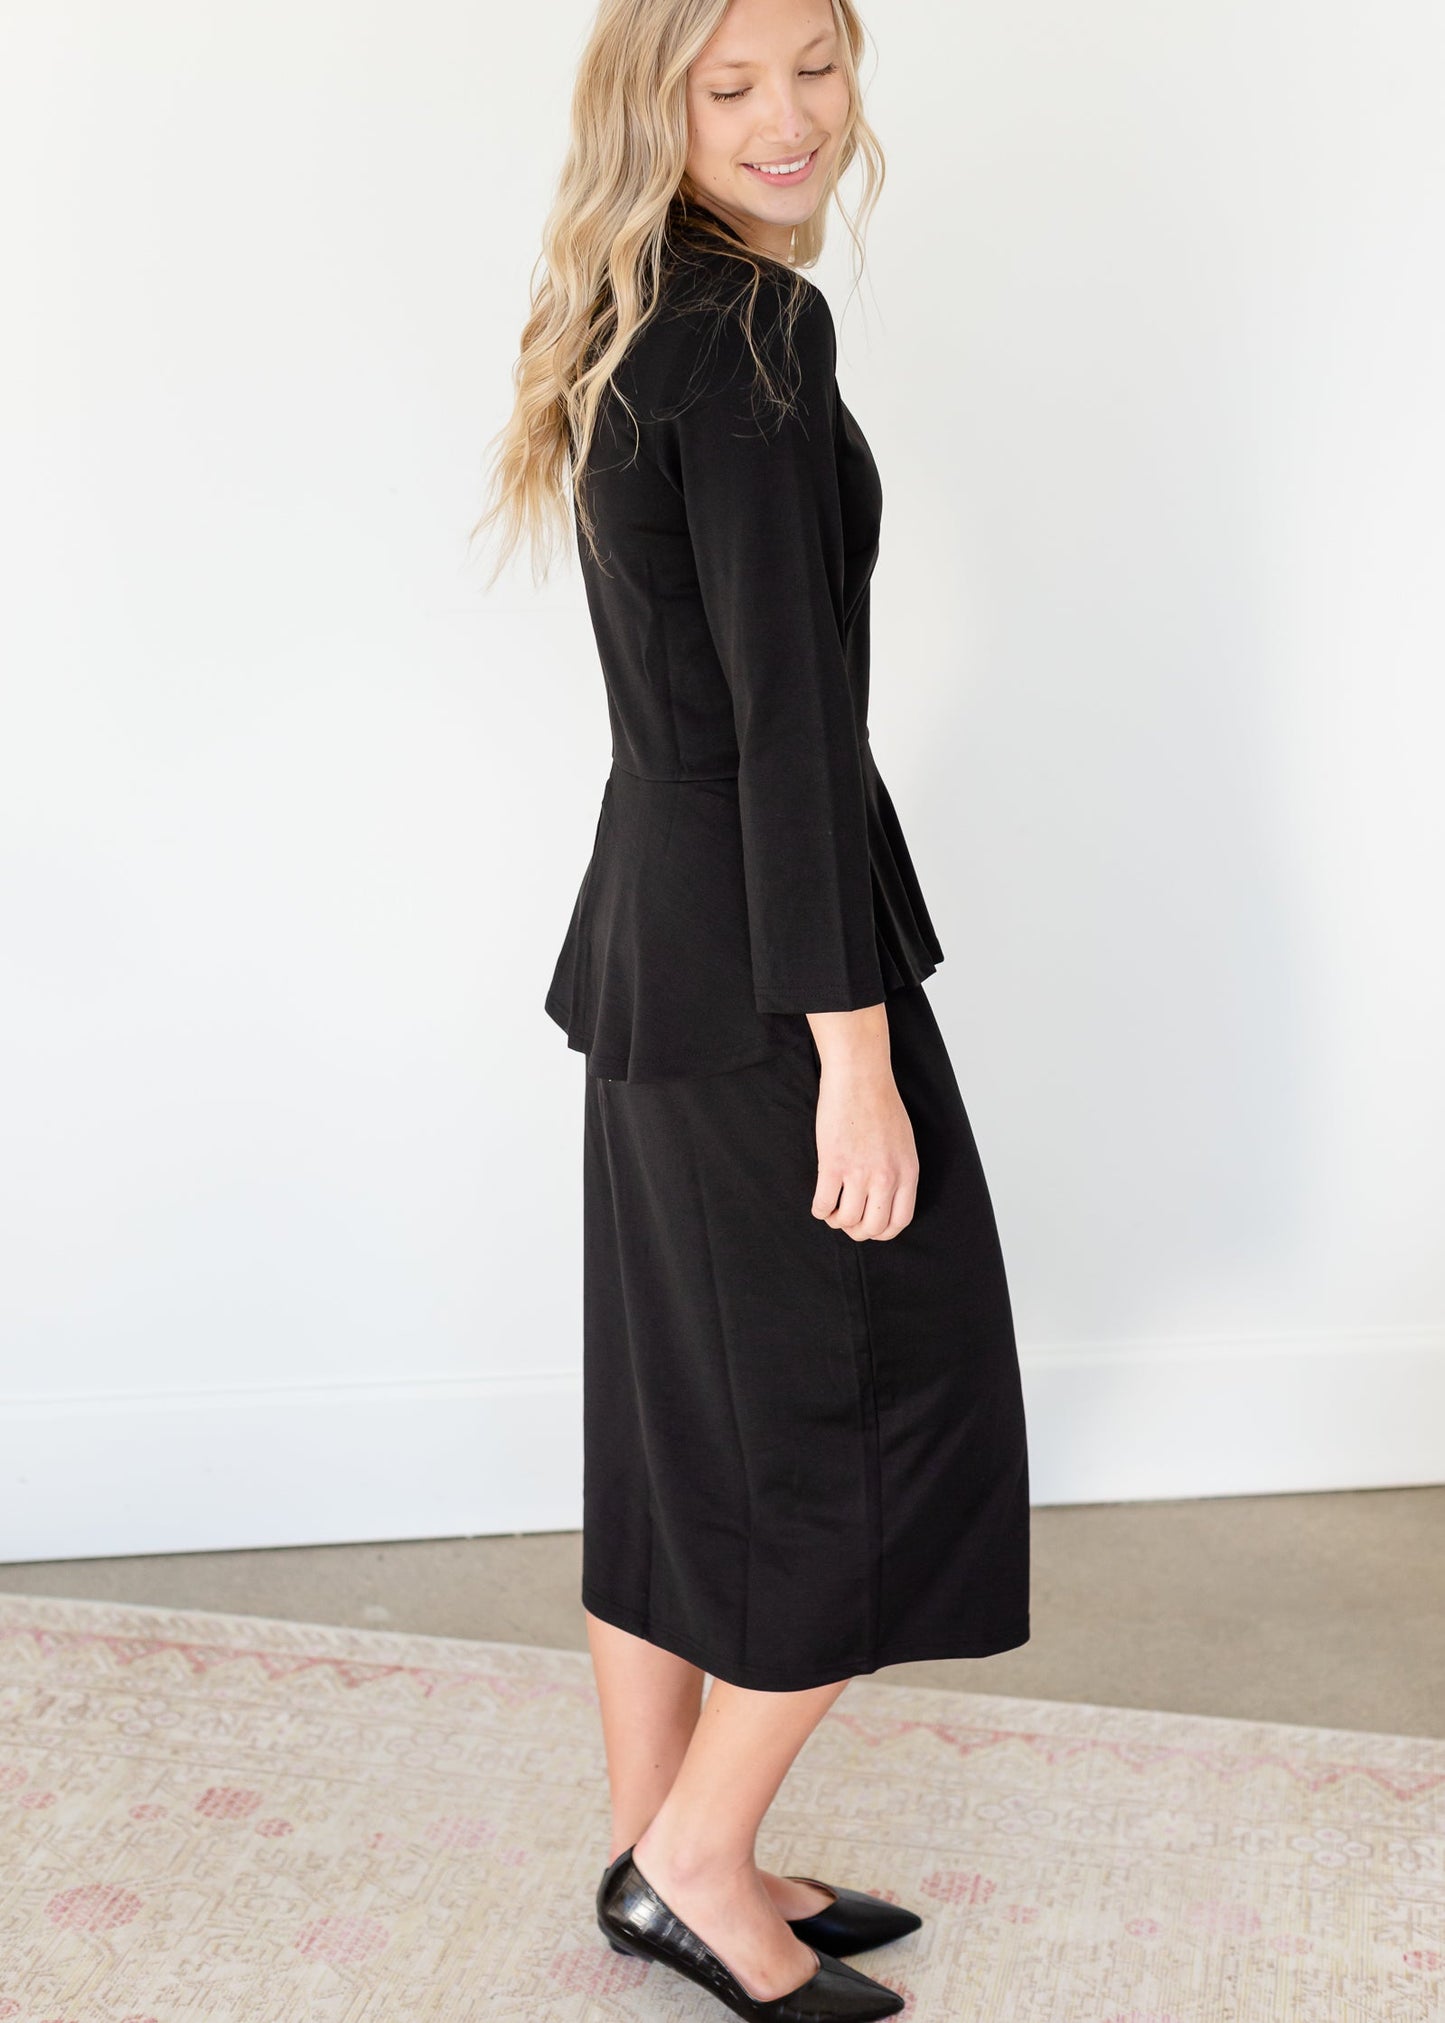 Mindy Black Straight Fit Midi Dress - FINAL SALE Dresses